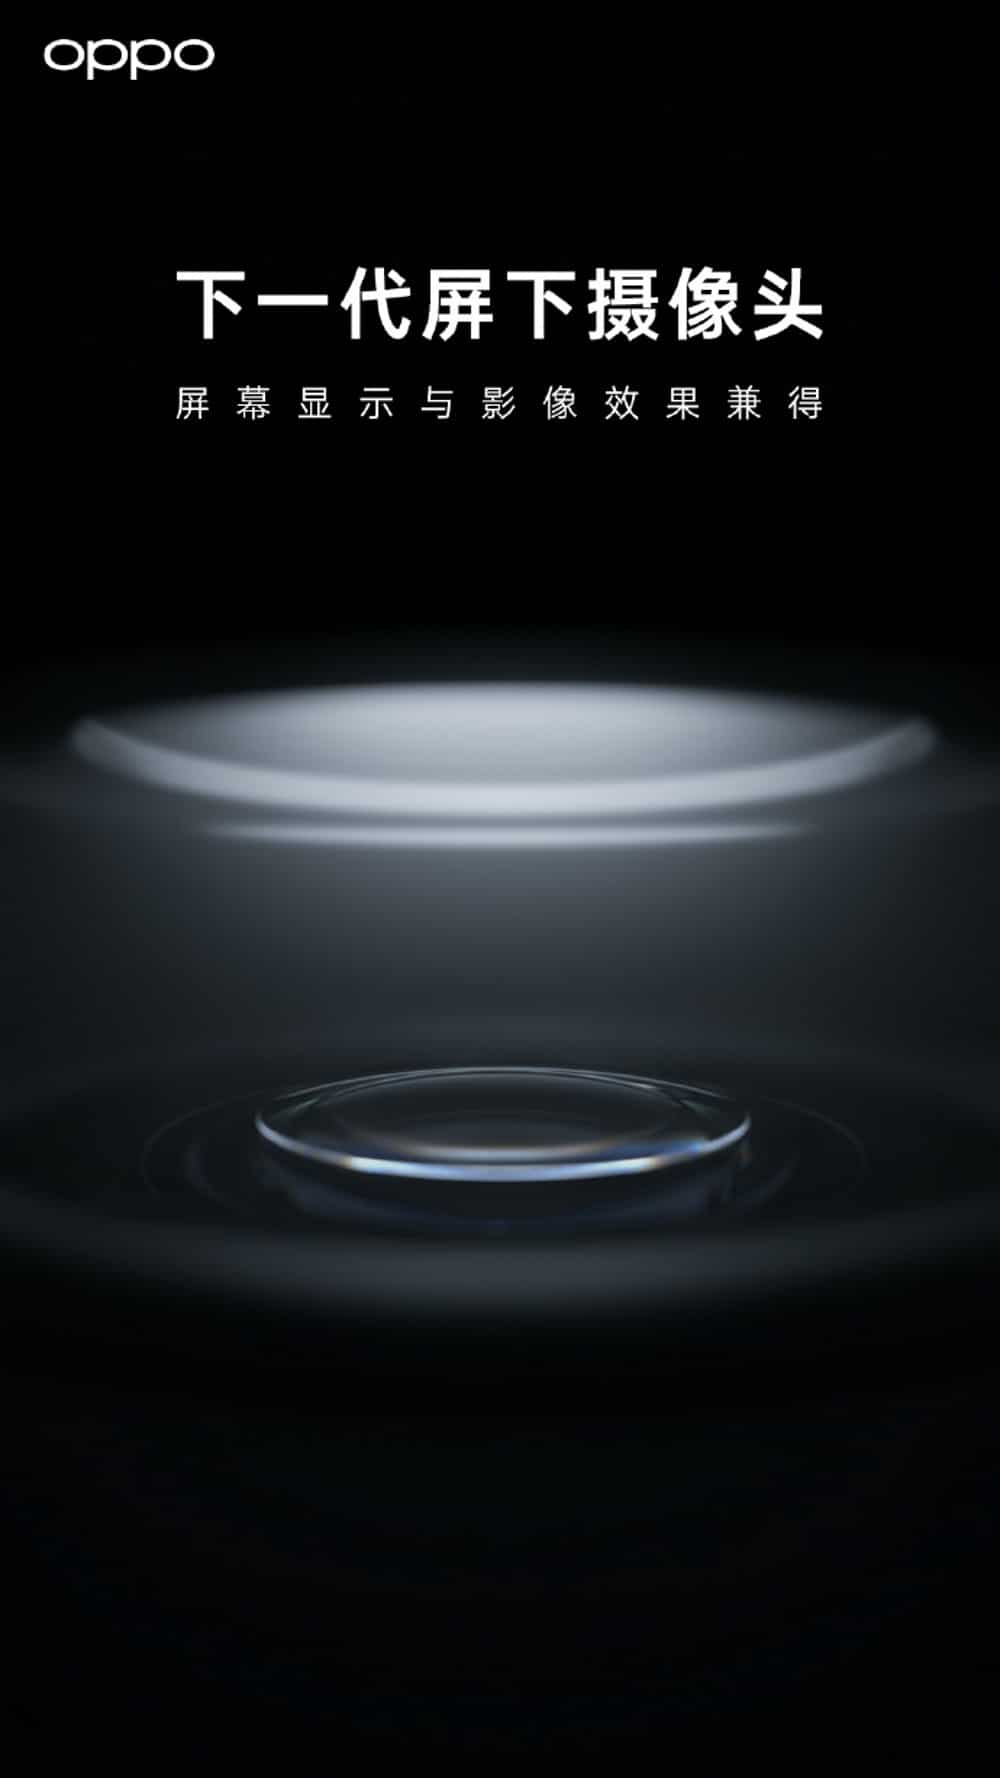 Pôster da Oppo no Weibo anuncia nova geração de câmera sob a tela